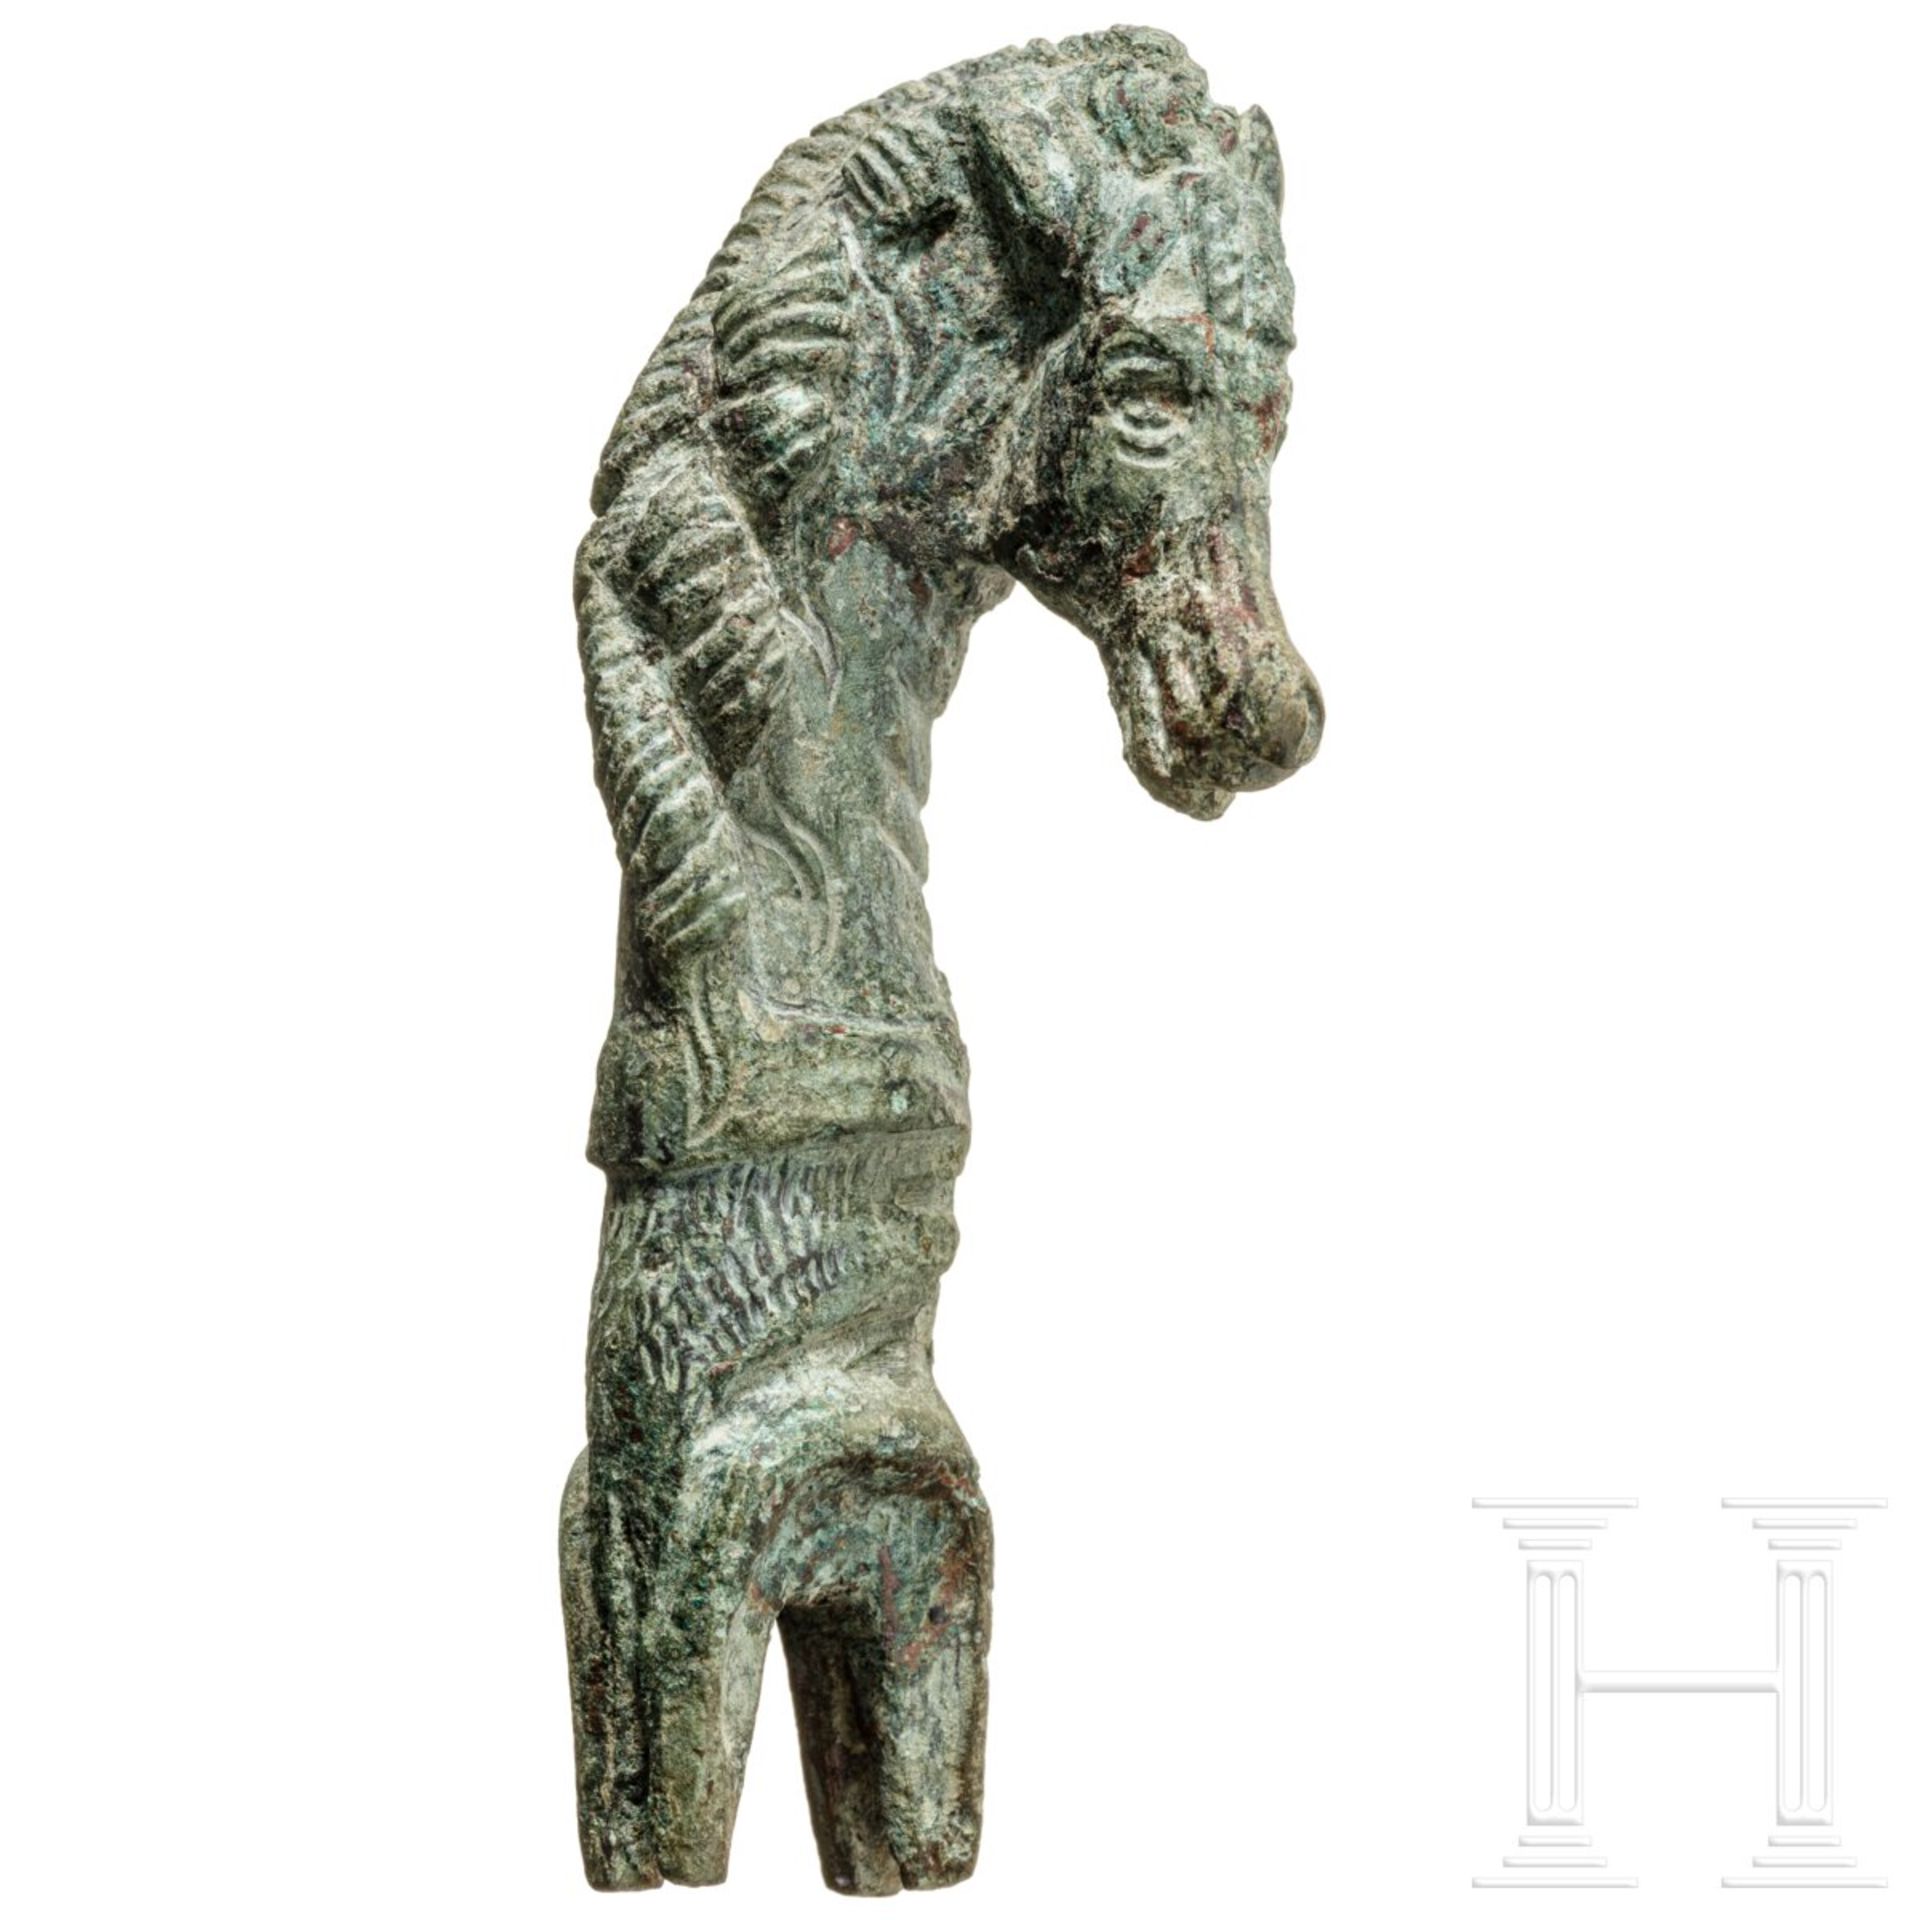 Pferdekopf-Endstück eines Gerätegriffs, Bronze, römisch, 2. - 3. Jhdt. 